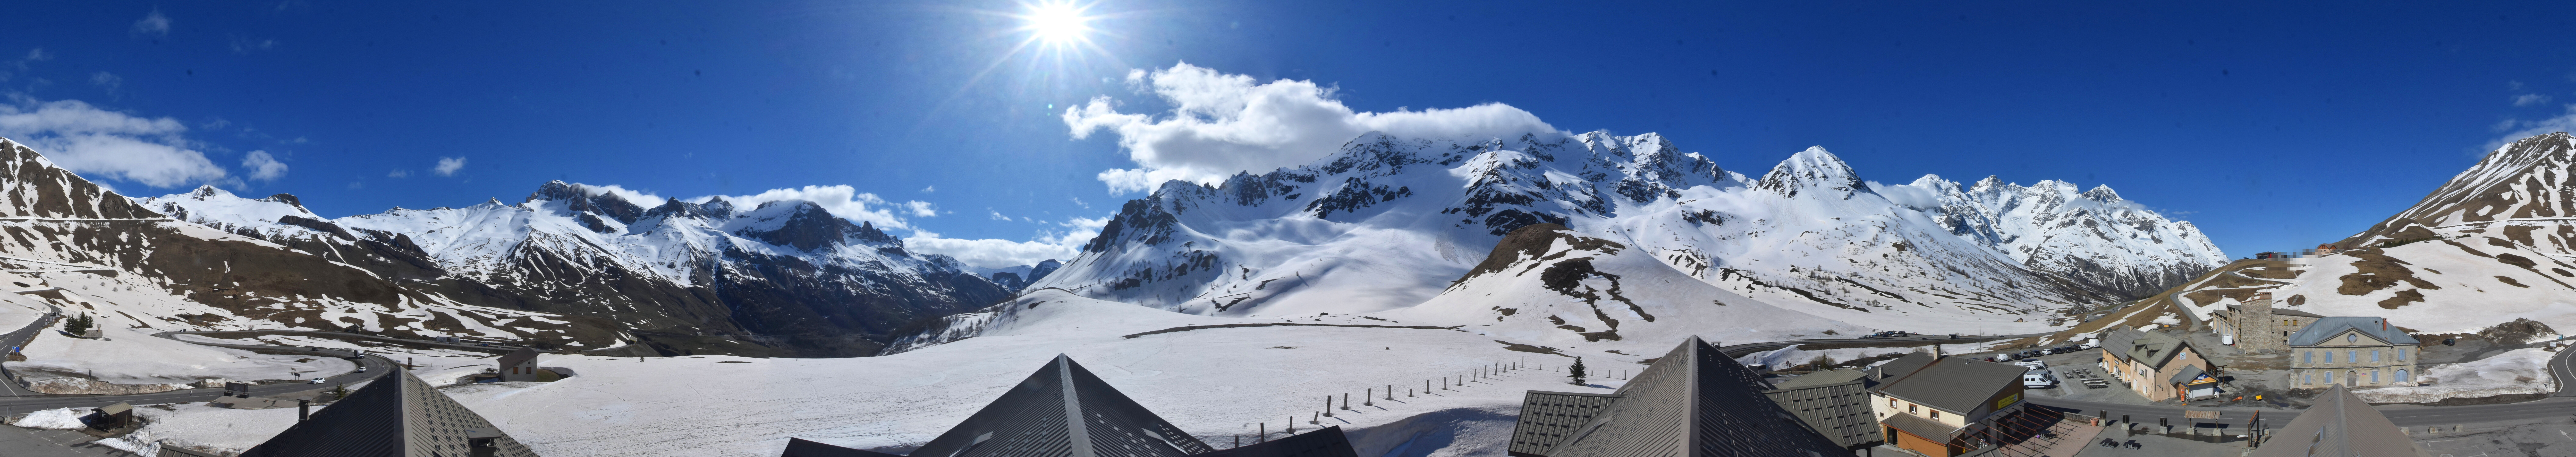 Webcam du col du Lautaret, plus haut col français ouvert à la circulation automobile en hiver